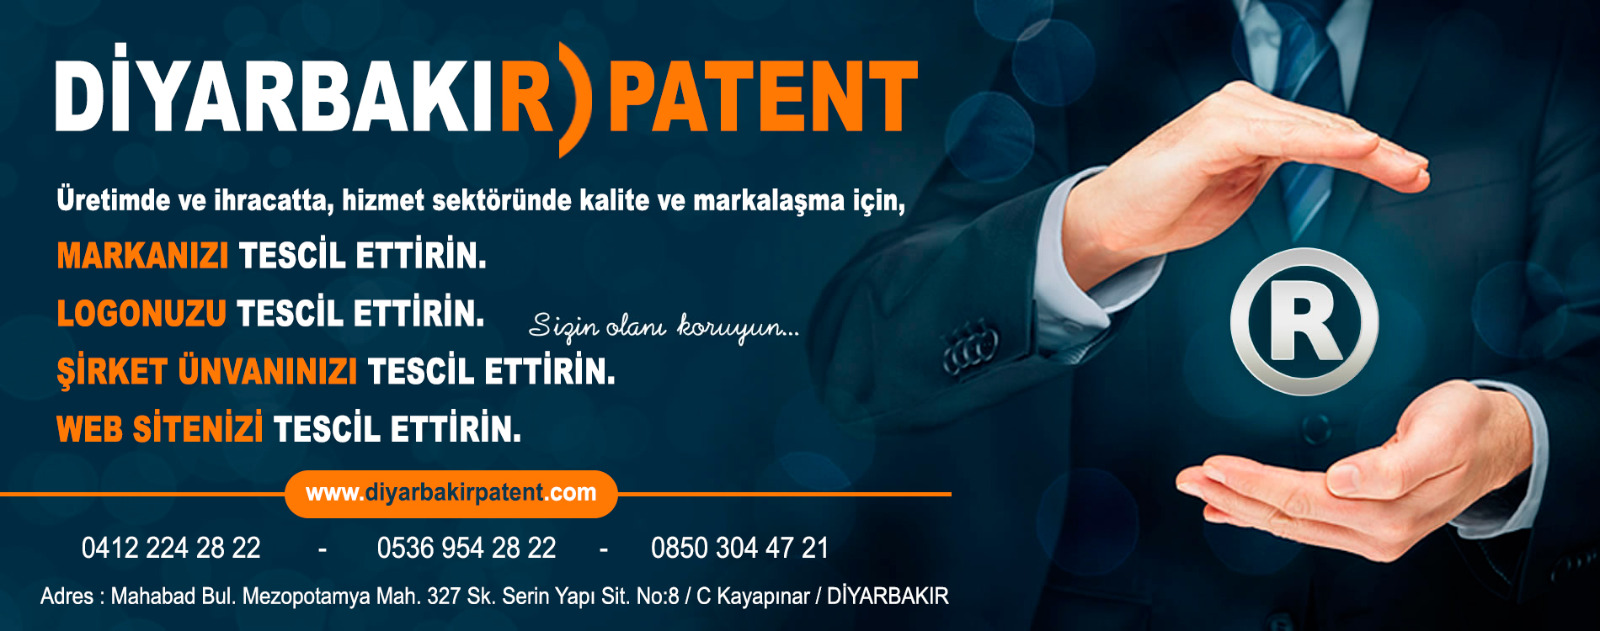 Fabrika Mahallesi Yenişehir Diyarbakır Marka Patent Firması 0412 224 28 22